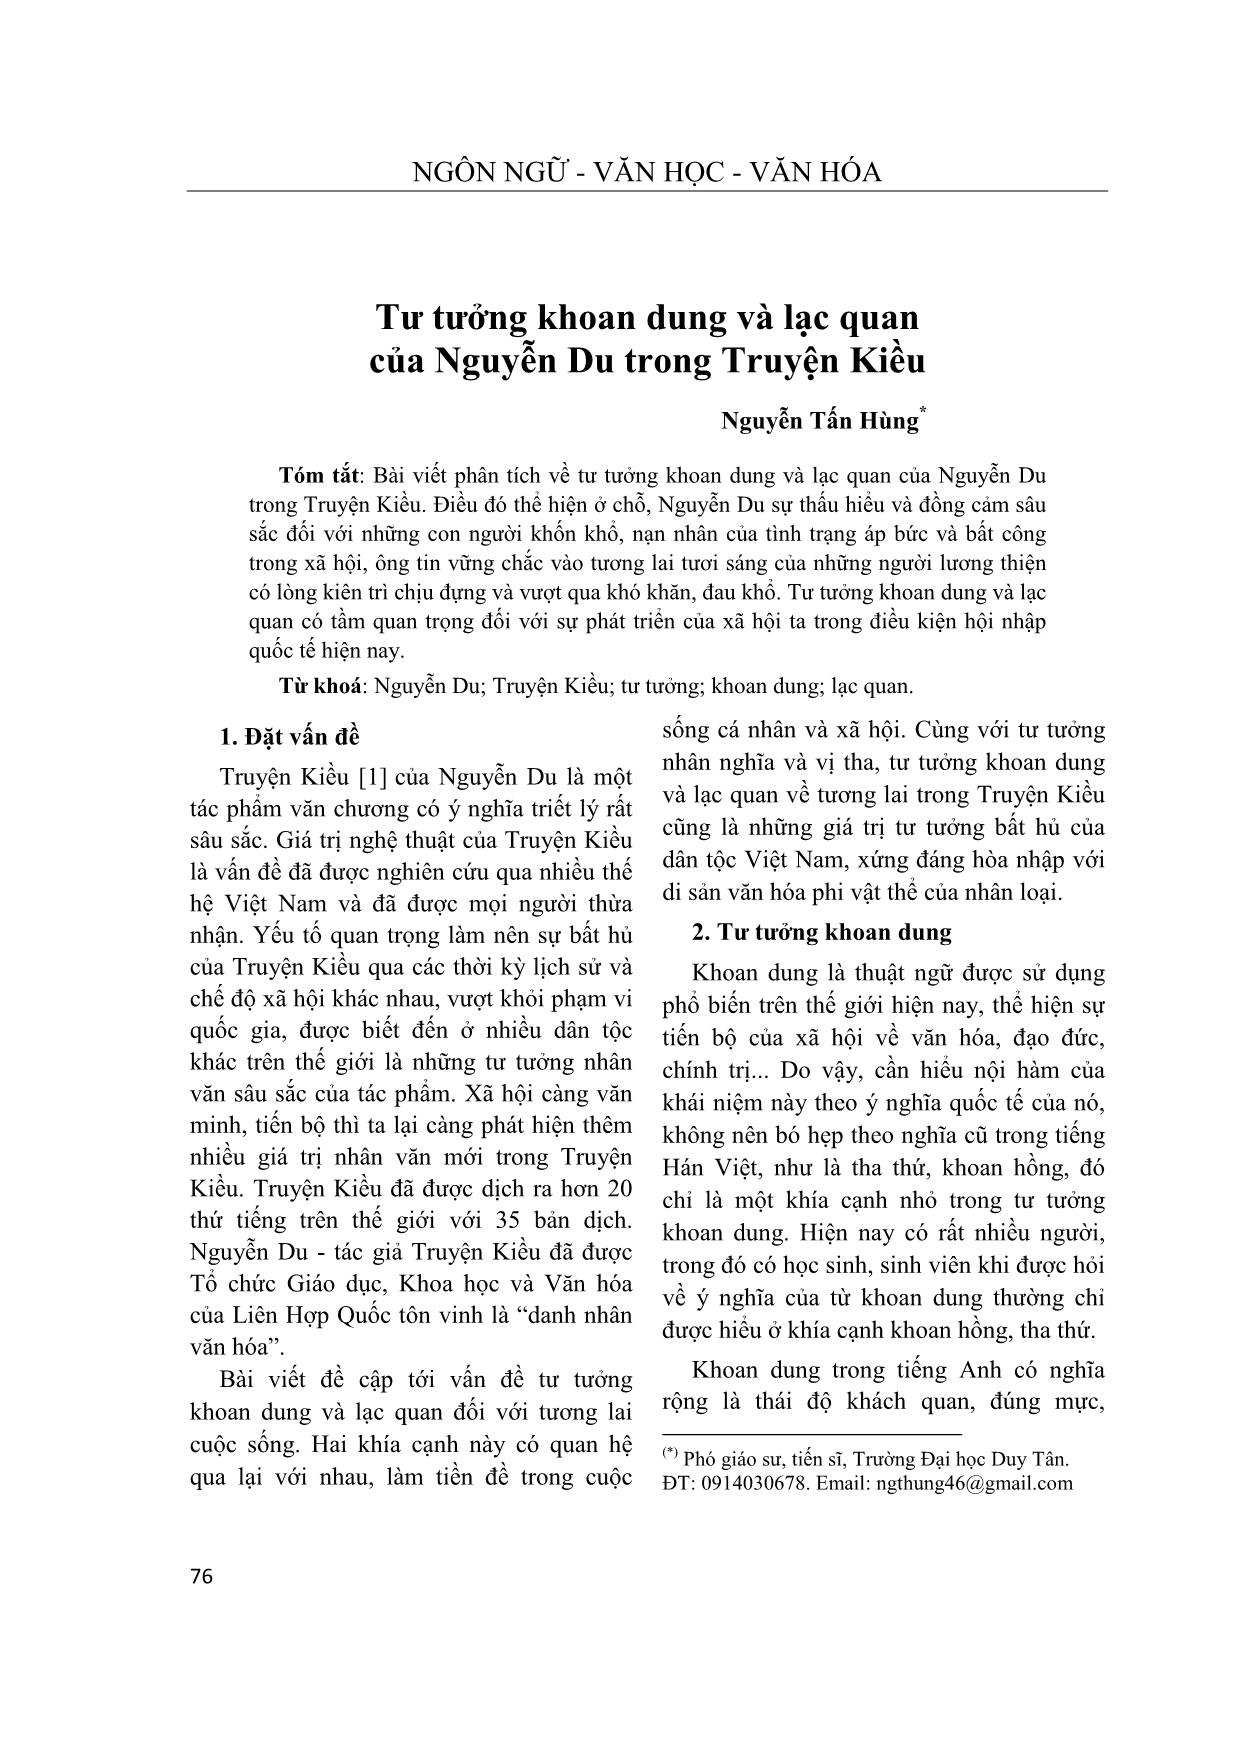 Tư tưởng khoan dung và lạc quan của Nguyễn Du trong Truyện Kiều trang 1